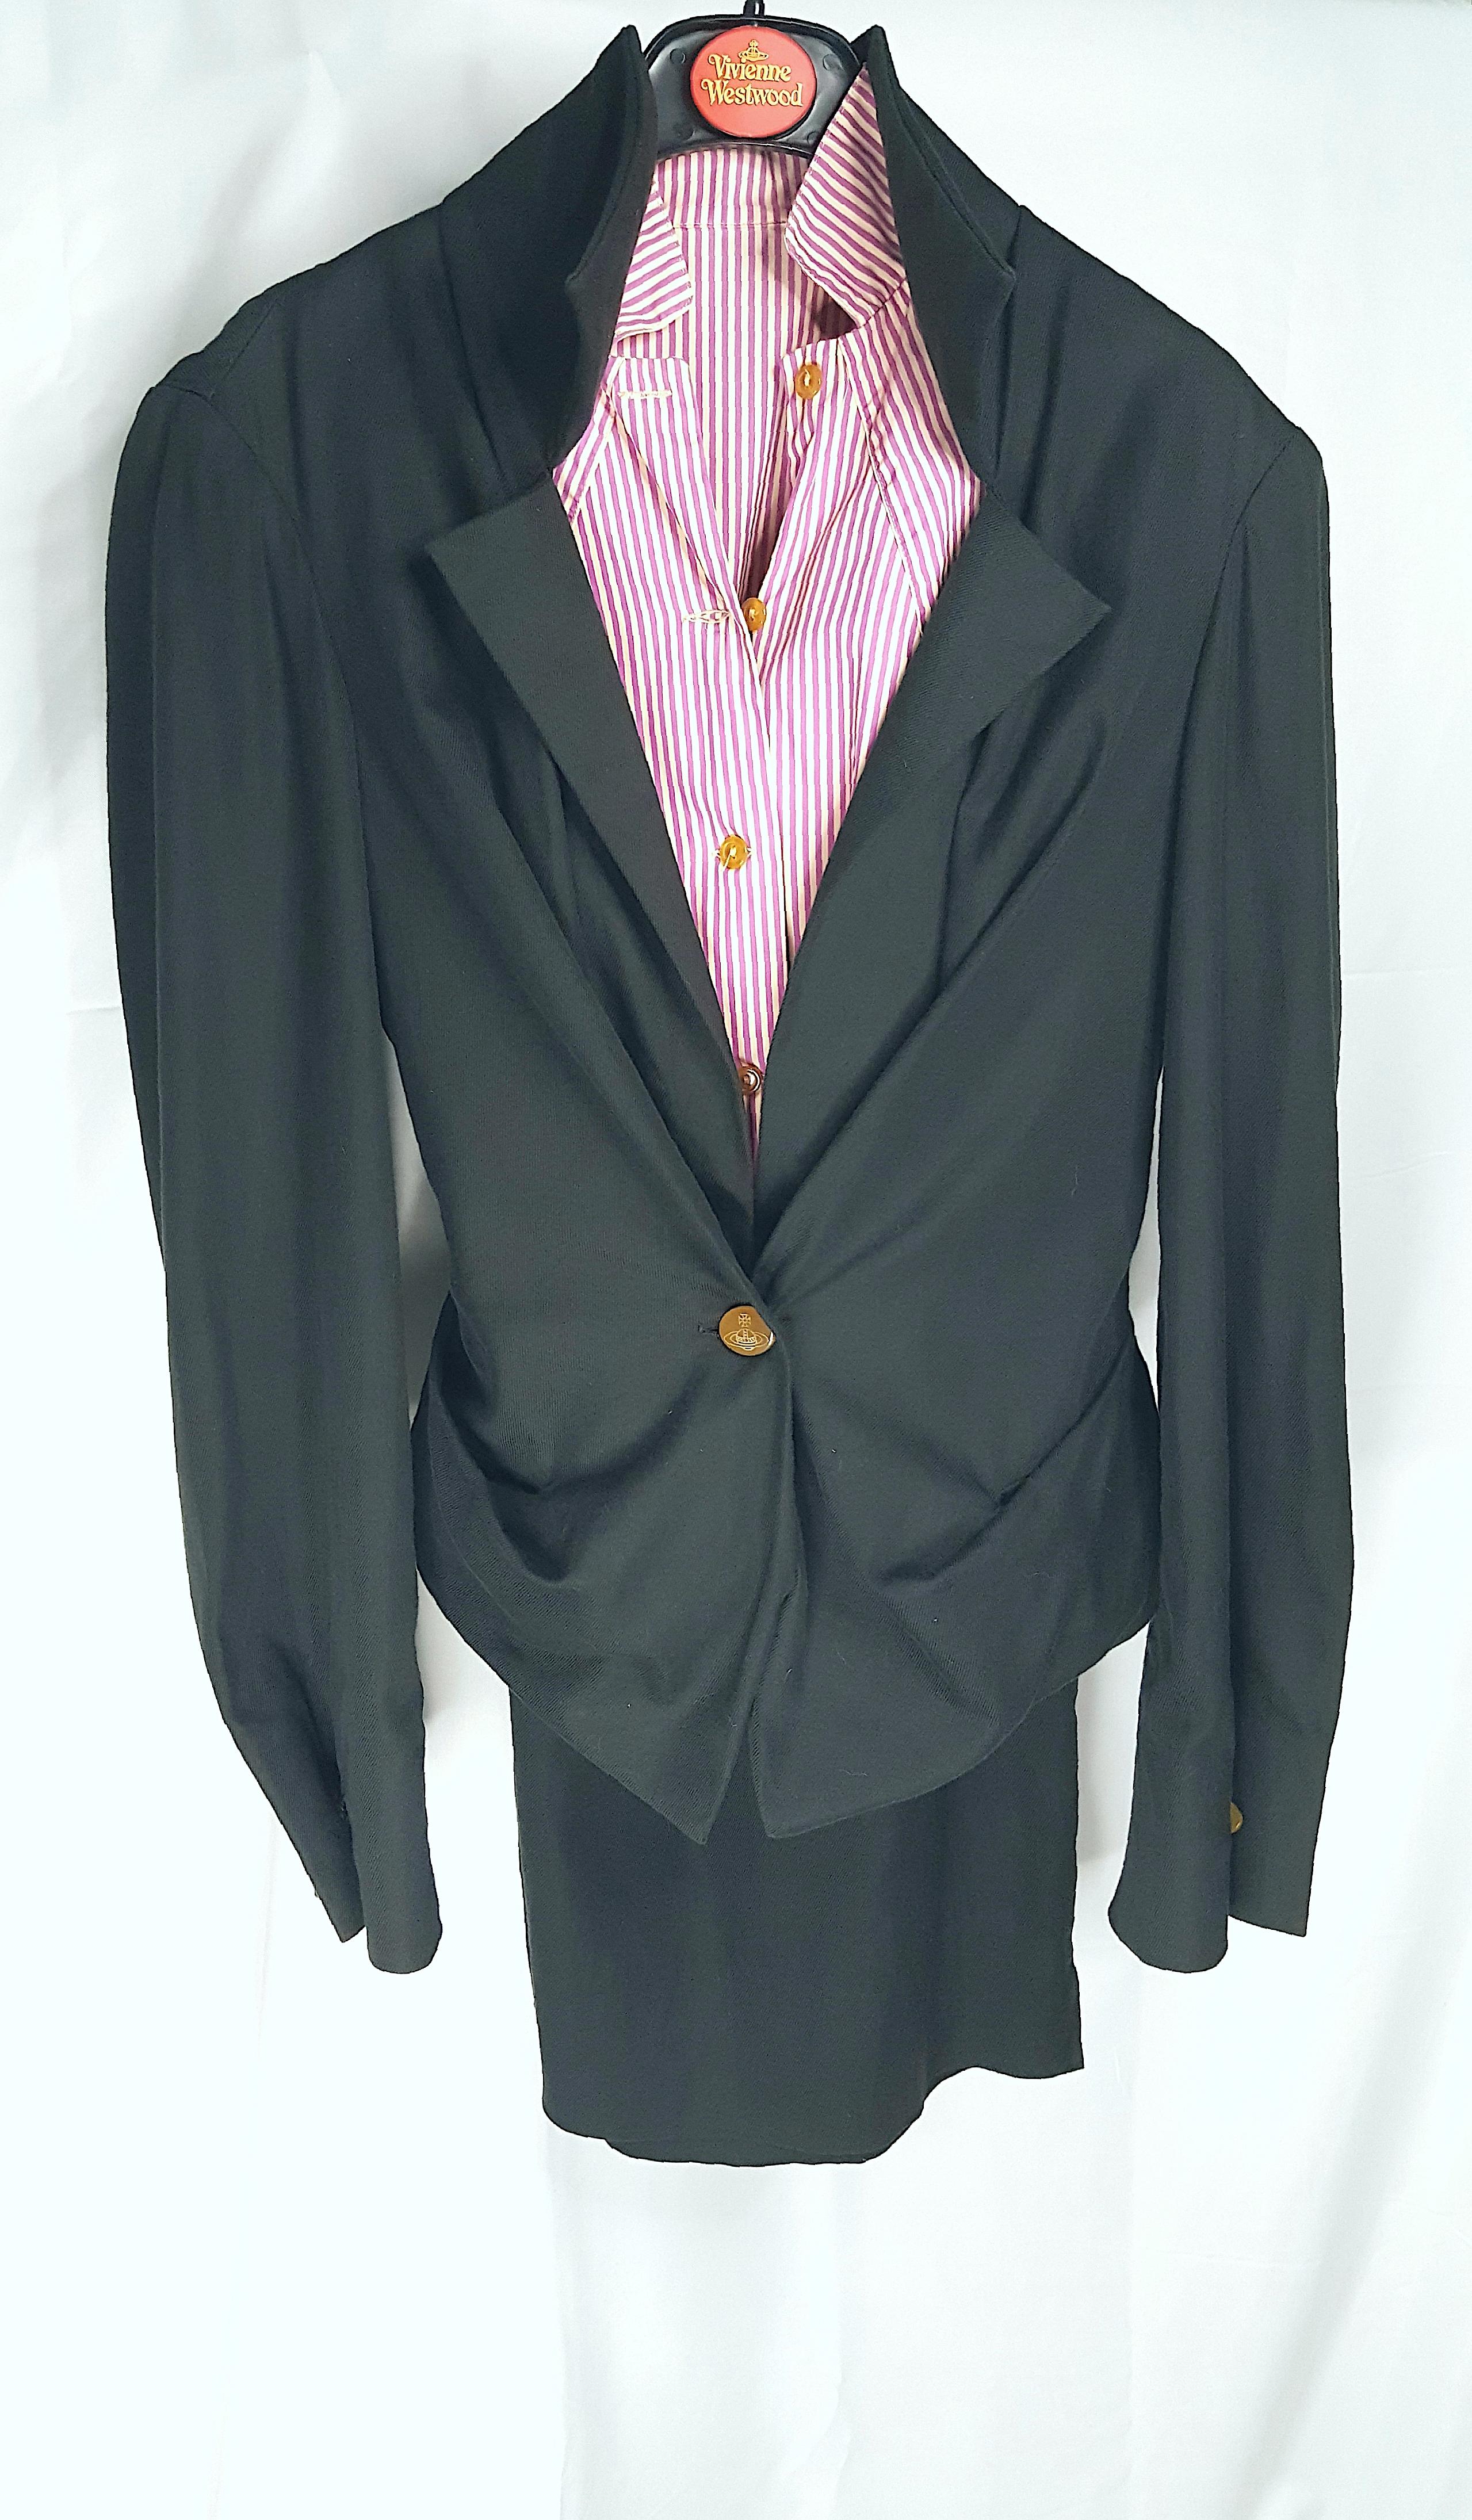 Pour le défilé printemps-été 1999 de la défunte créatrice britannique, cet ensemble en coton Vivienne Westwood, composé d'une veste noire de style corset, d'une jupe fendue assortie et d'une chemise boutonnée à rayures colorées, a été porté pour les